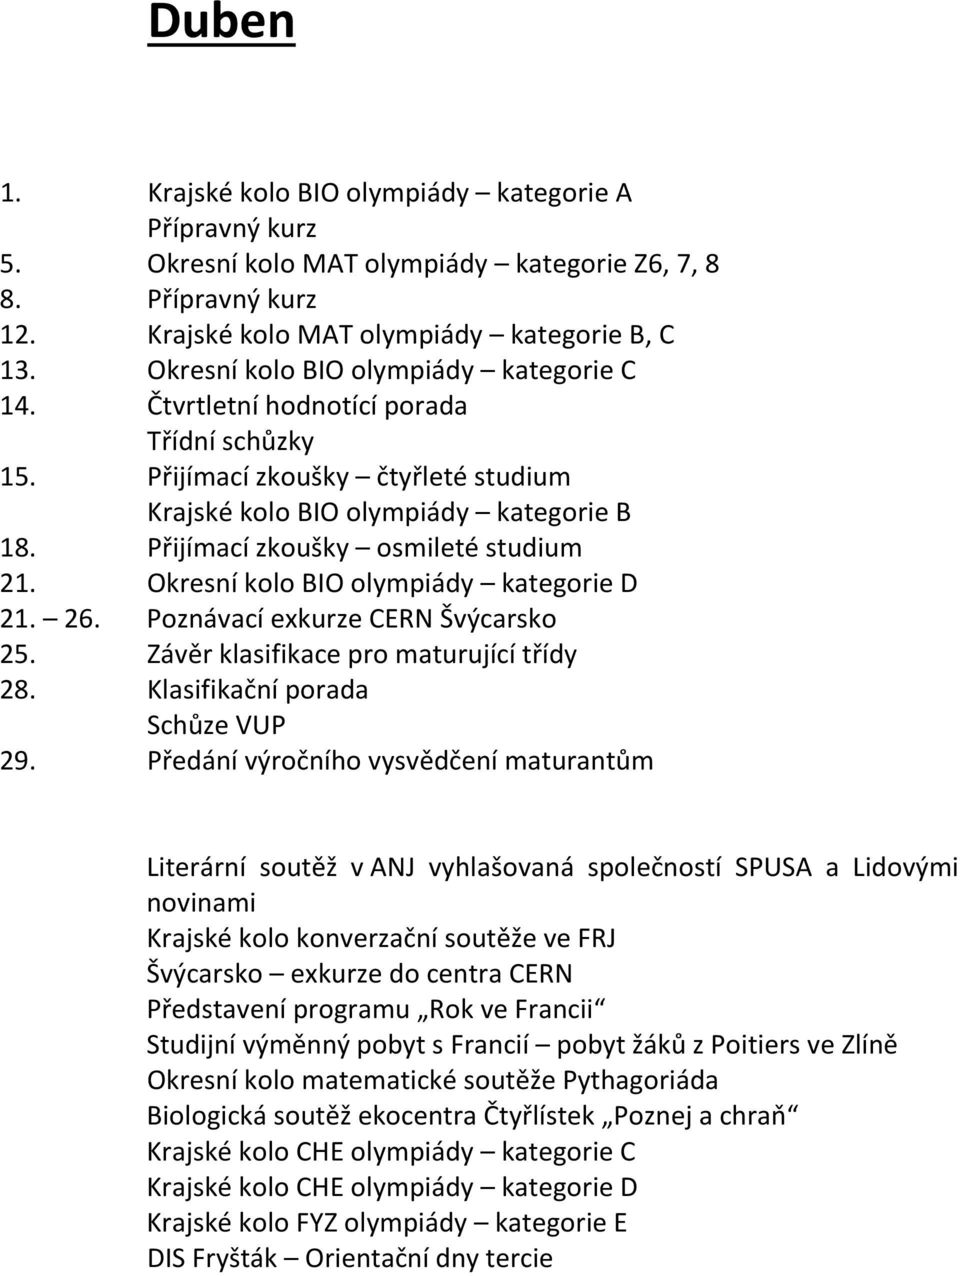 Přijímací zkoušky osmileté studium 21. Okresní kolo BIO olympiády kategorie D 21. 26. Poznávací exkurze CERN Švýcarsko 25. Závěr klasifikace pro maturující třídy 28. Klasifikační porada Schůze VUP 29.